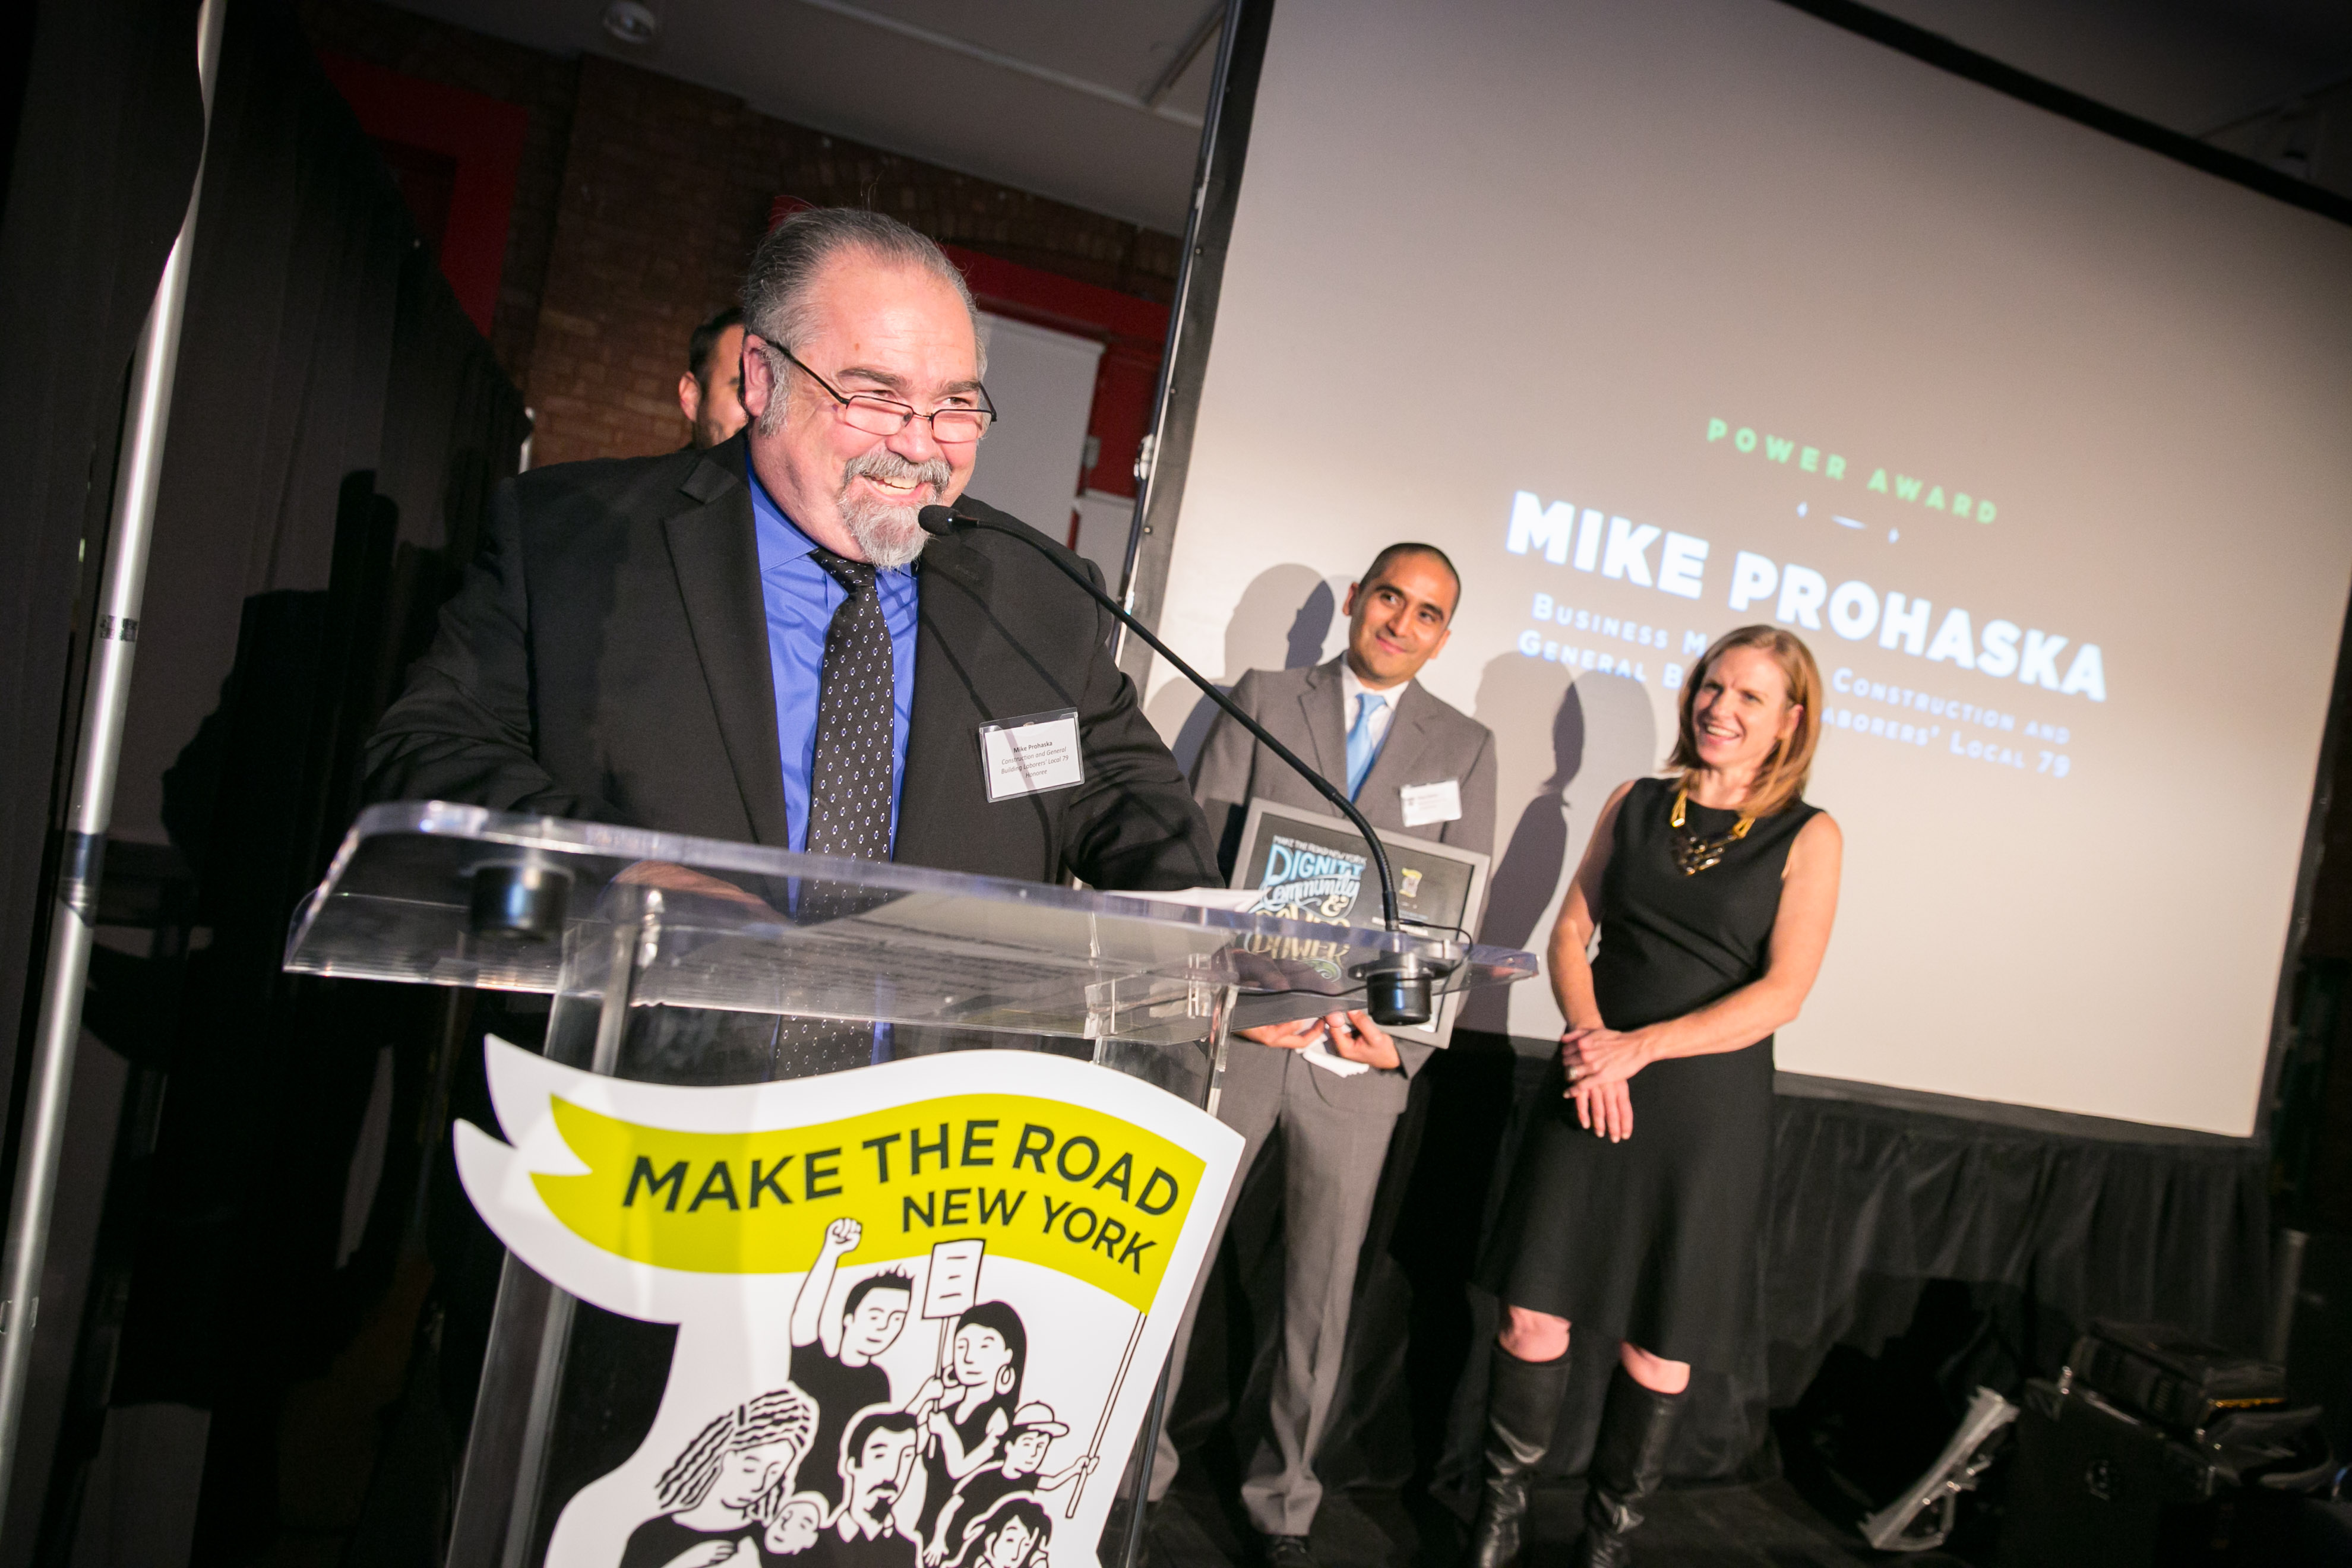 Mike Prohaska at Make the Road Gala